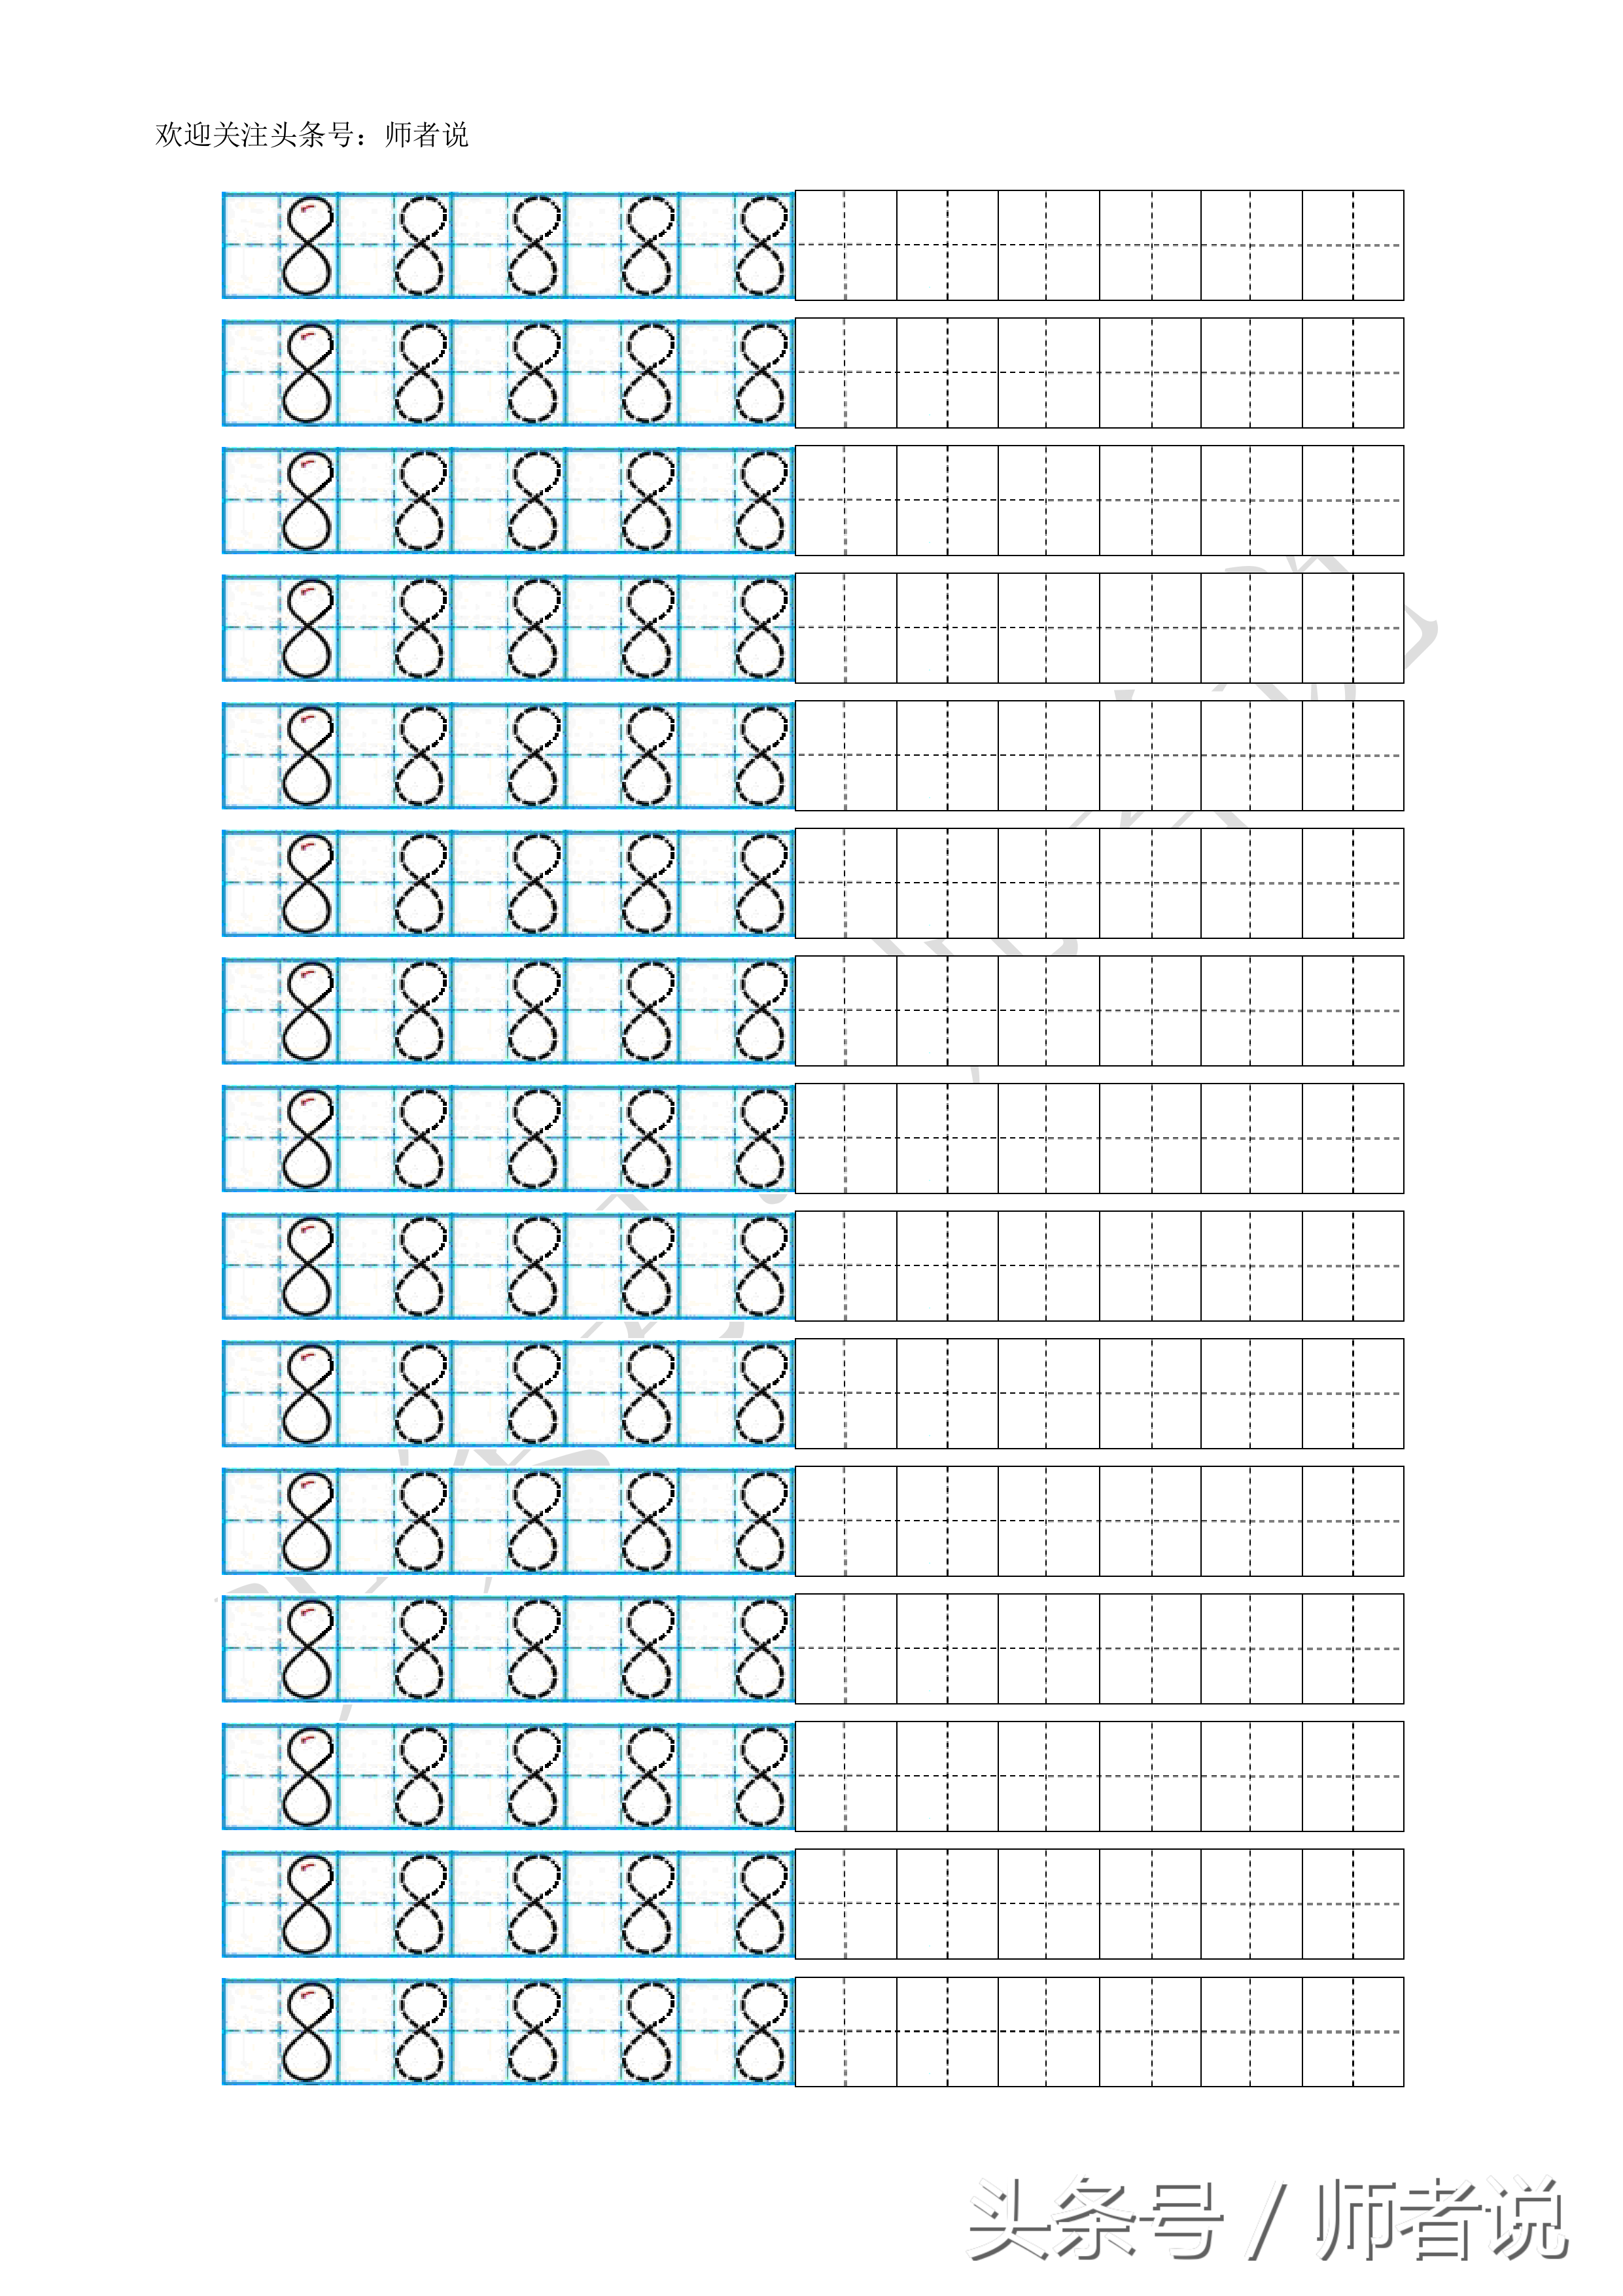 数字描红1到10打印（幼儿阿拉伯数字描红1-10打印版）(10)